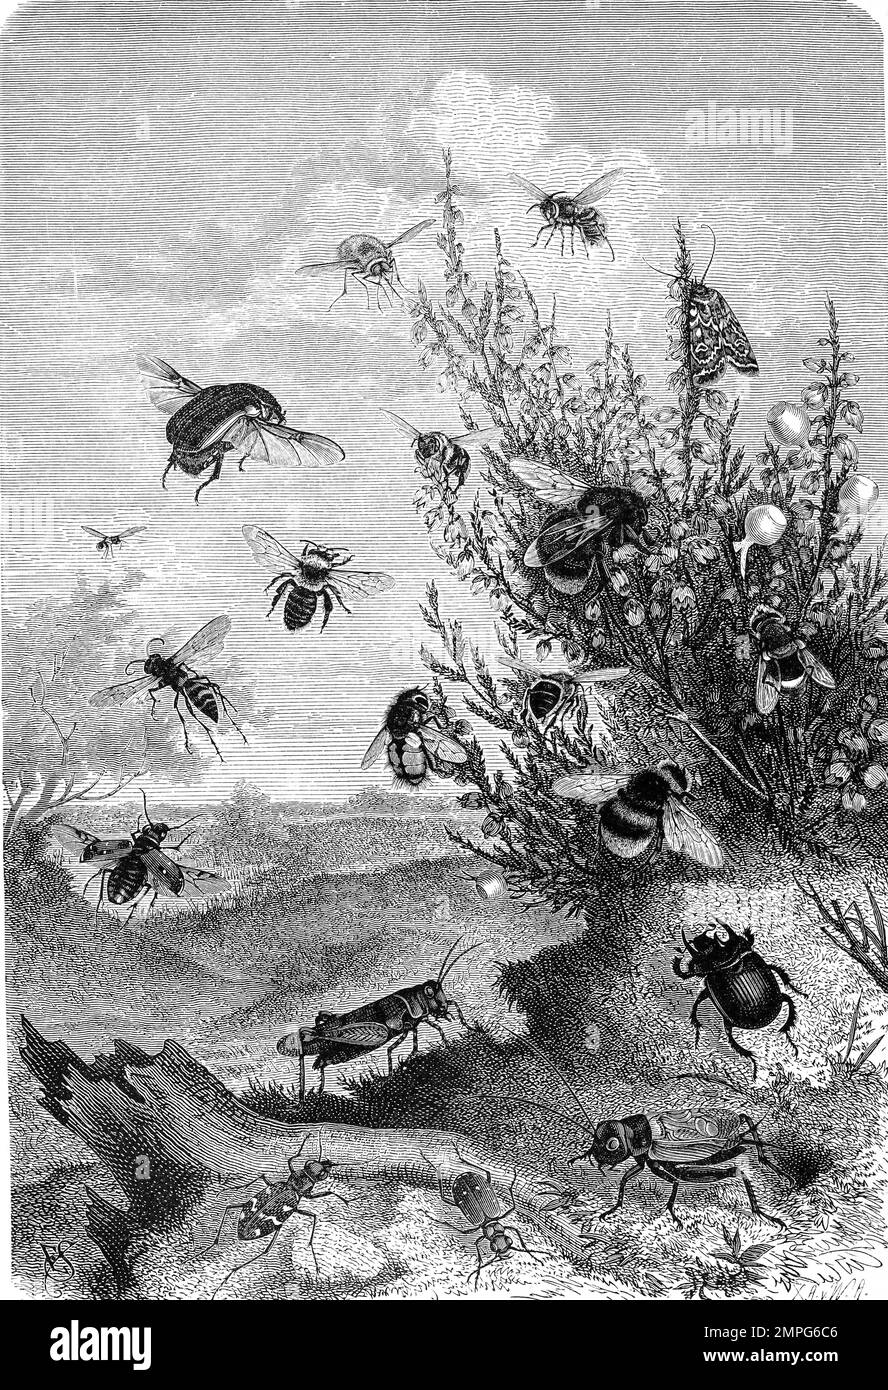 Insekten, Insektenleben am Heidekraut, Bienen, Hummeln, Fliegen, Heidekrauteule, Historisch, digital restaurierte Reproduktion von einer Vorlage aus dem 19. Jahrhundert Stock Photo